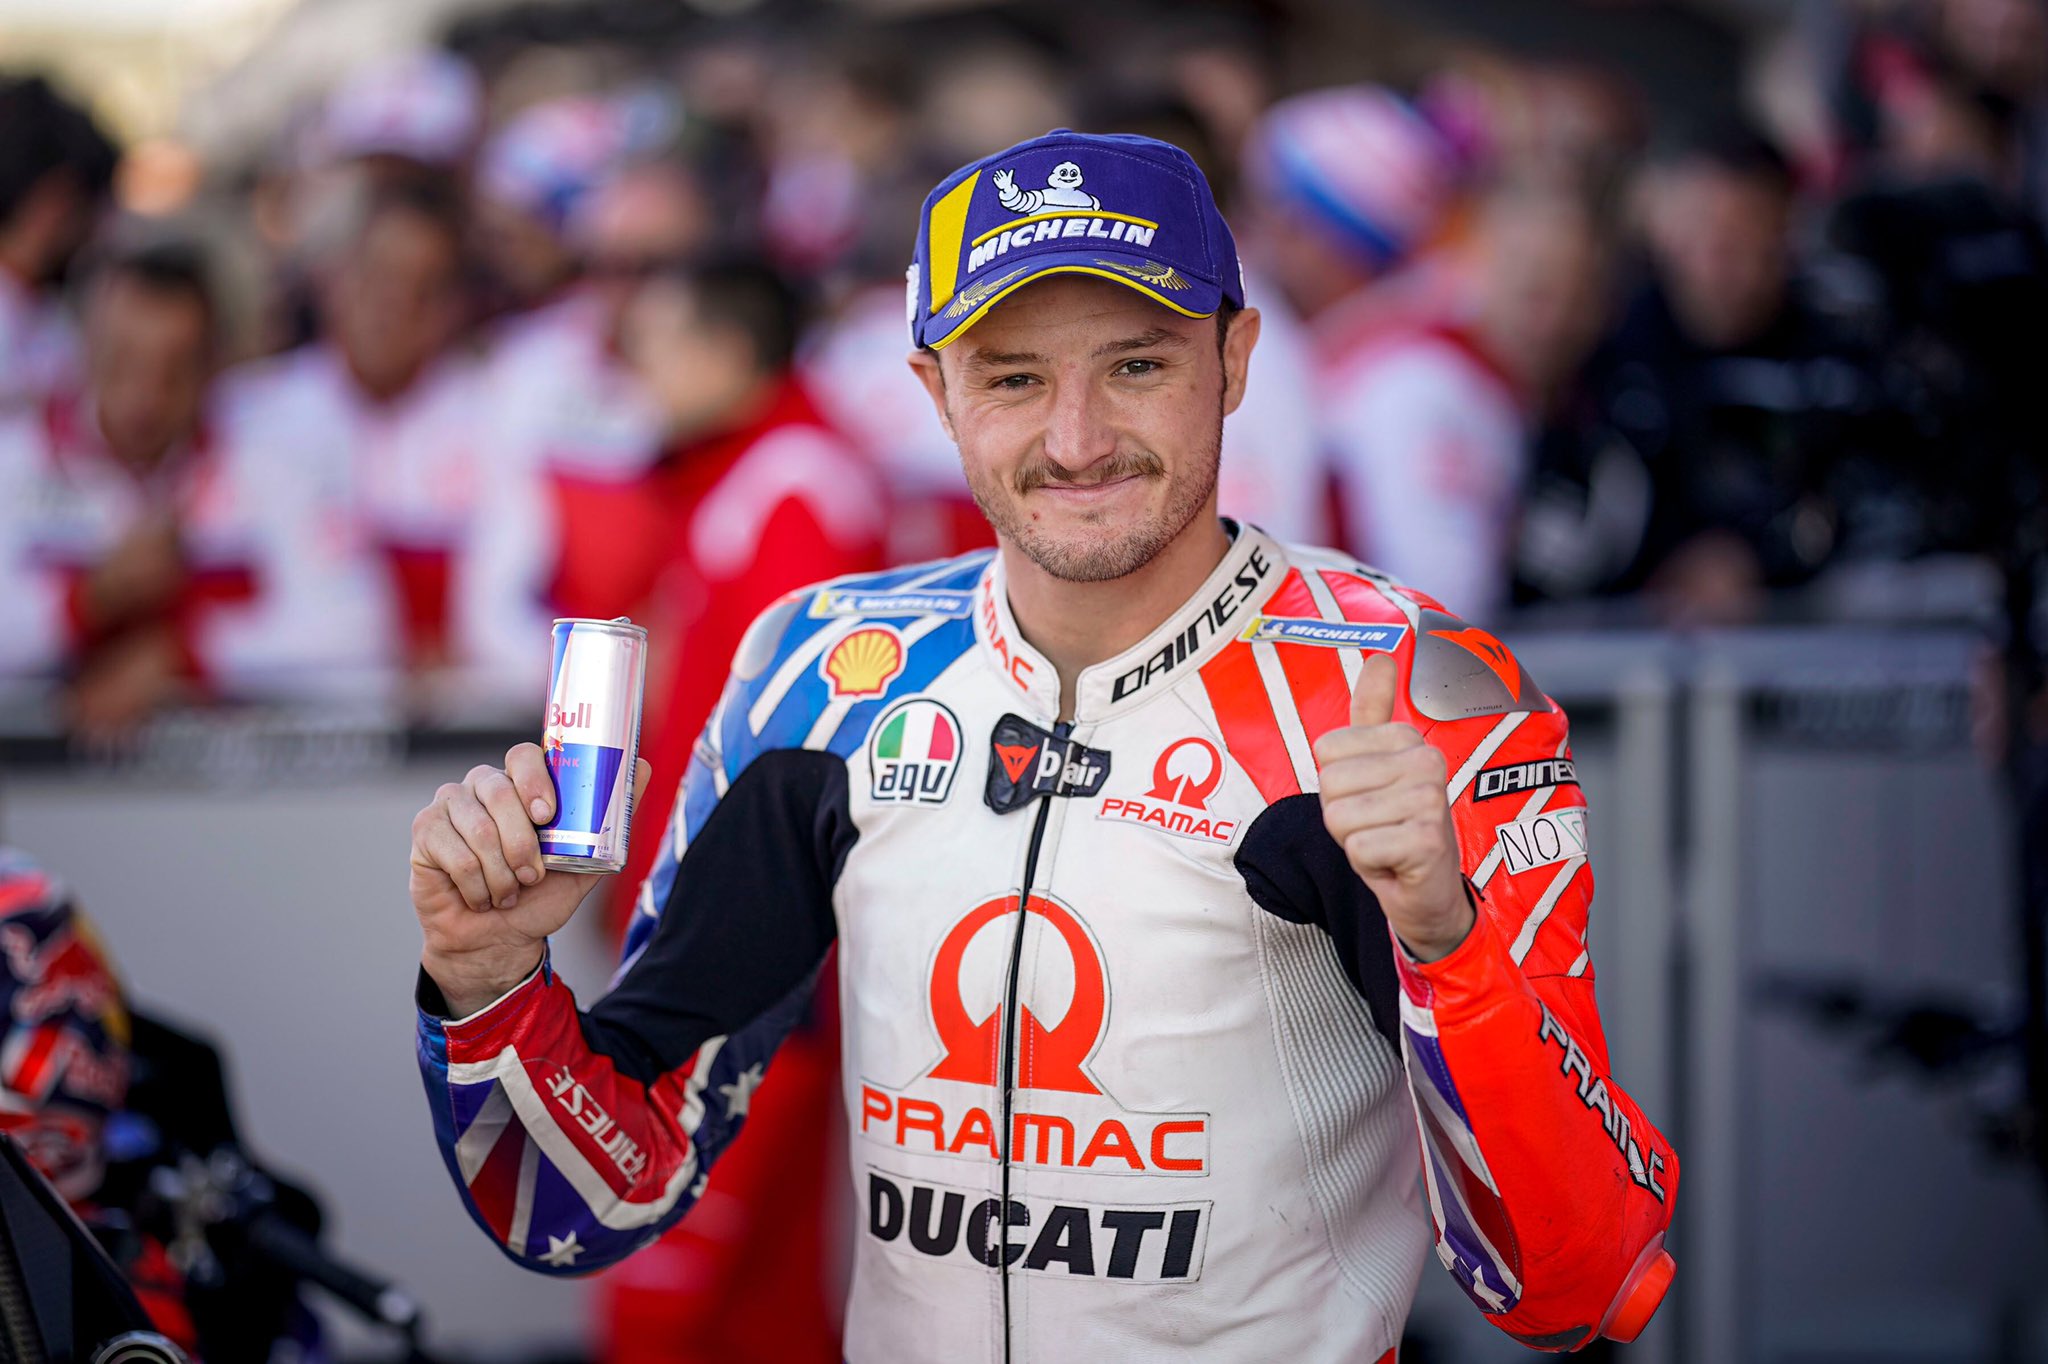 Hasil FP3 MotoGP Portugal 2020: Jack Miller Tercepat, Valentino Rossi Masih Terpuruk